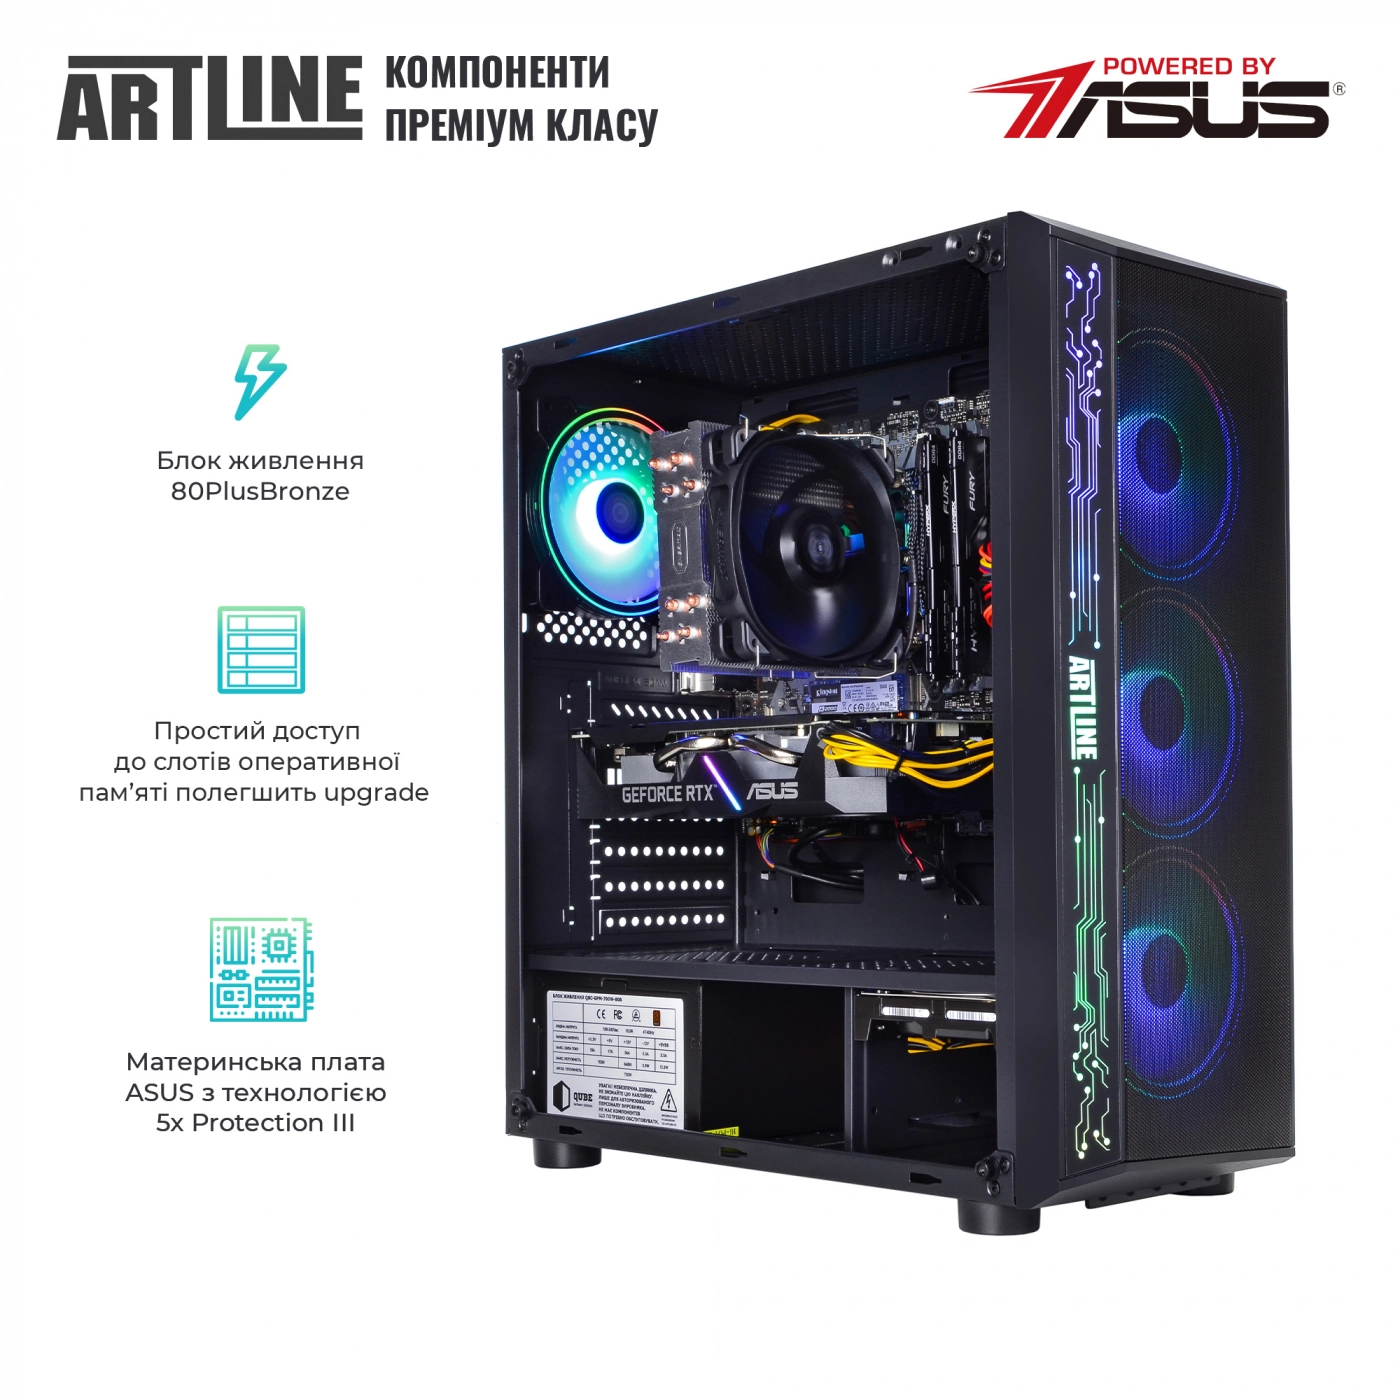 Купить Компьютер ARTLINE Gaming X65v36 - фото 2